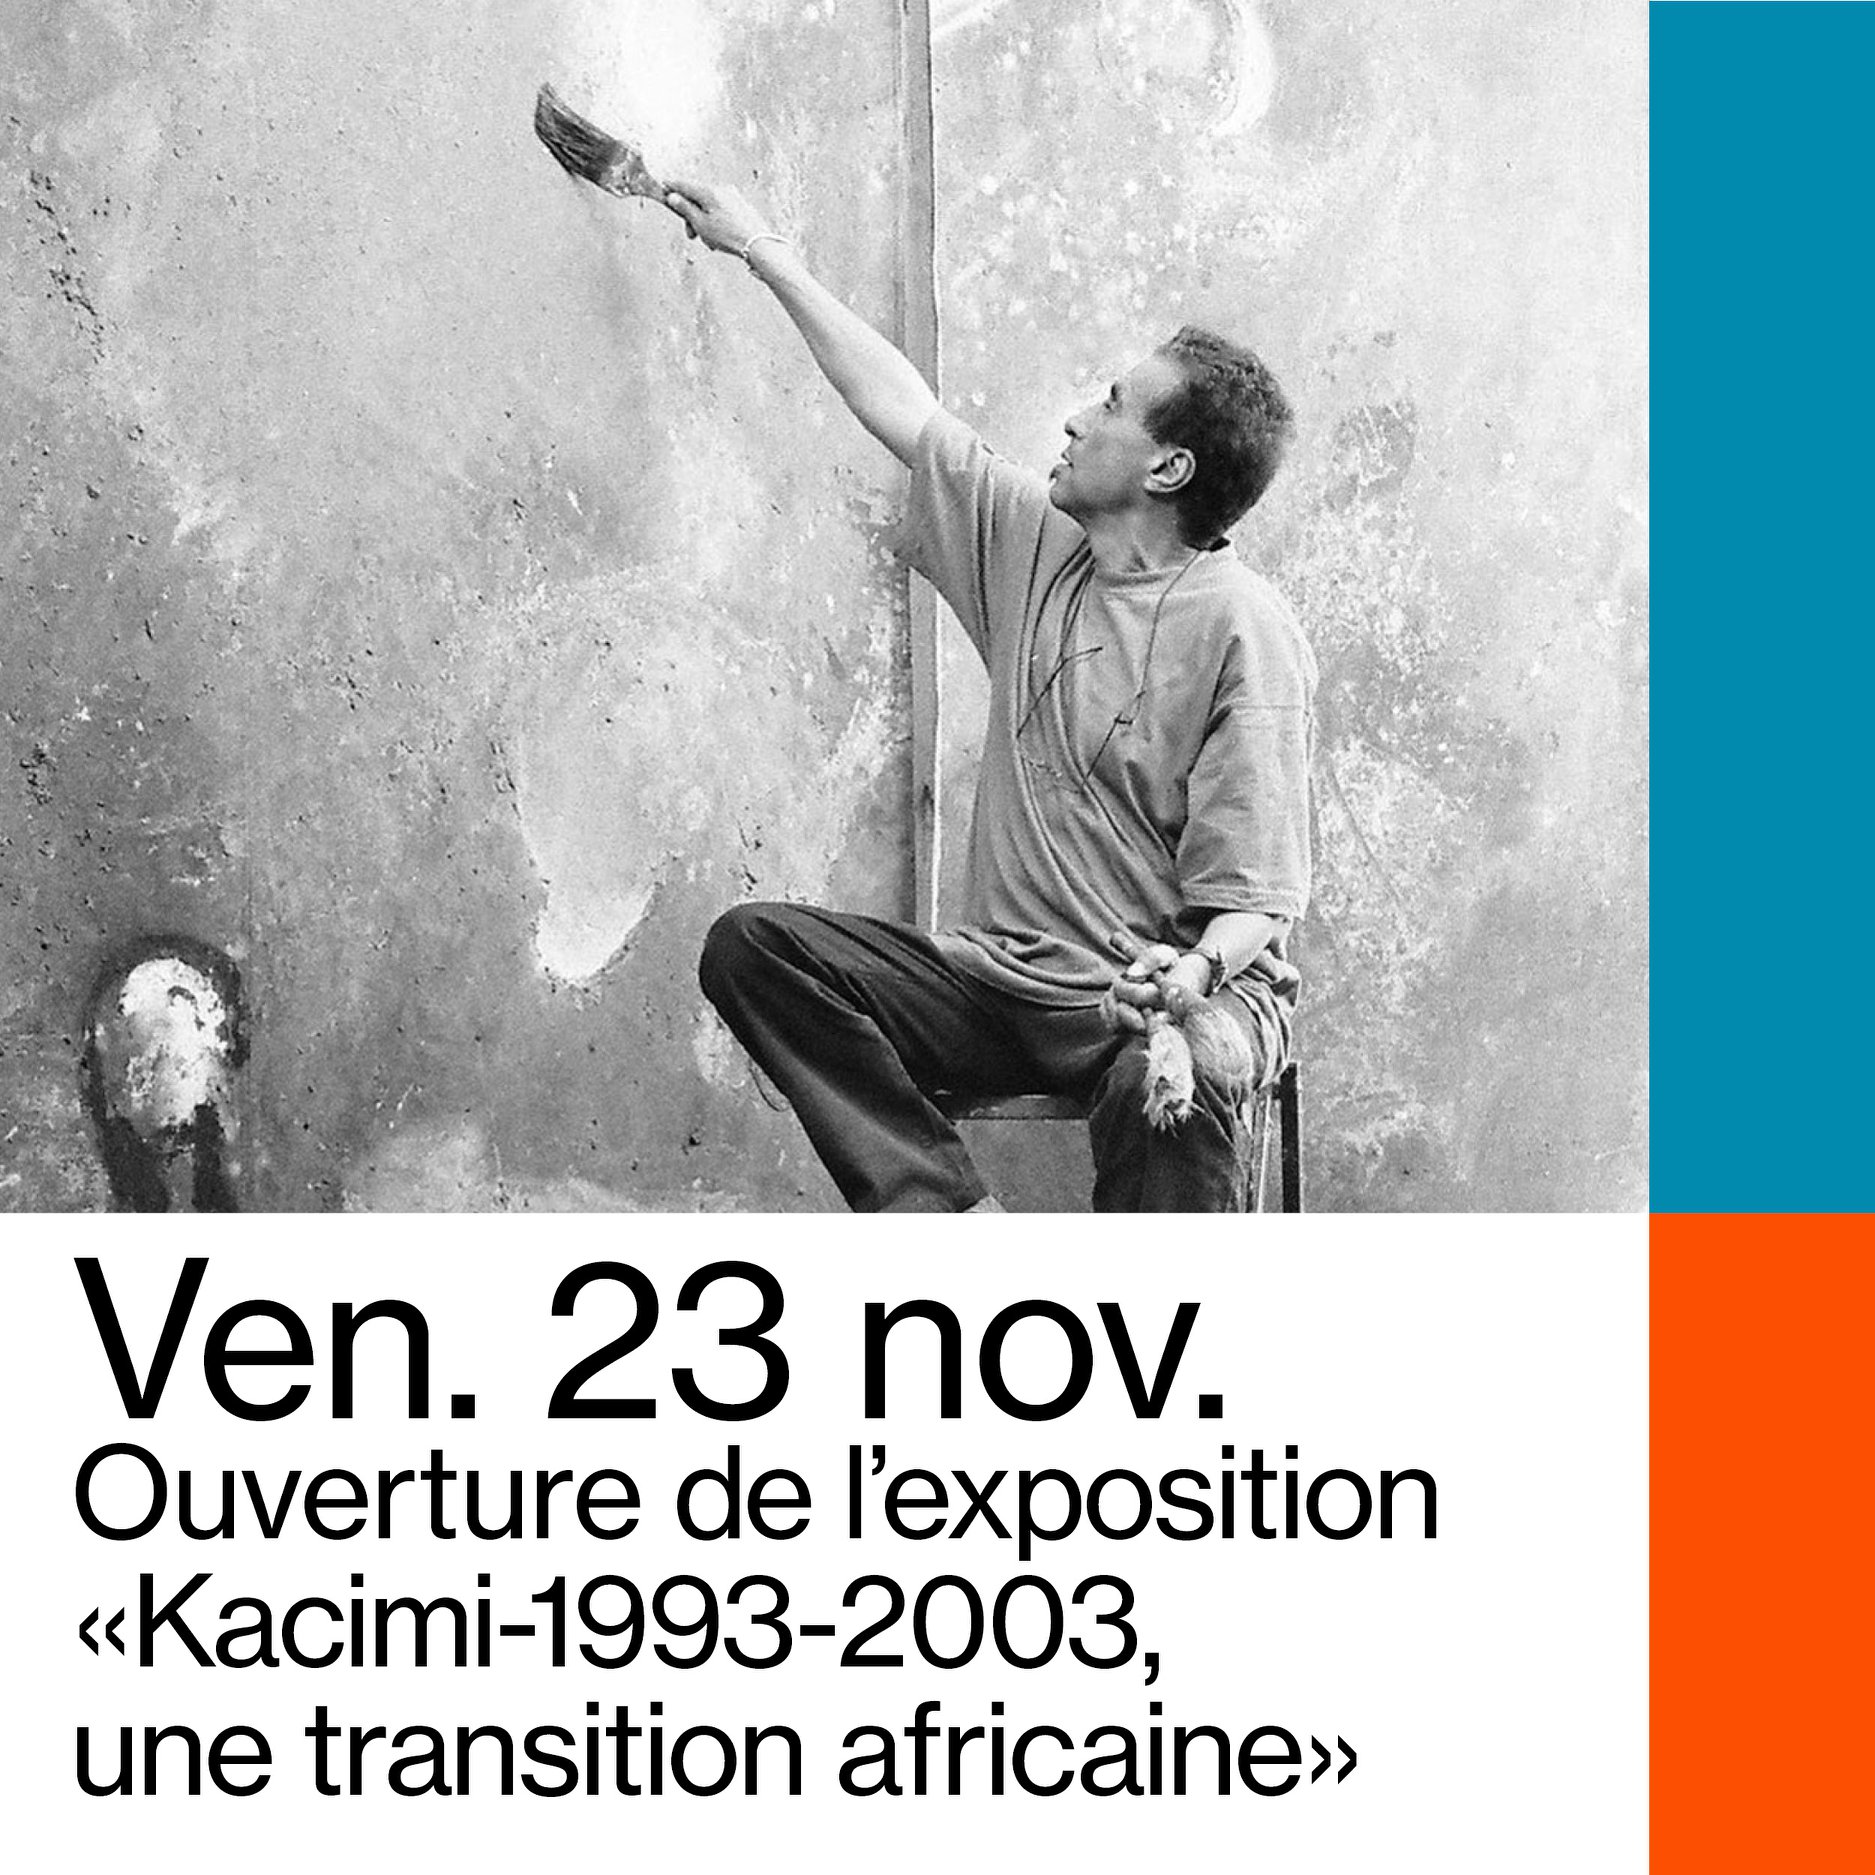 L'exposition "Kacimi : 1993-2003, une transition africaine" au Mucem de Marseille, "une marque de reconnaissance pour tous les artistes marocains" (promoteur d'art marocain)